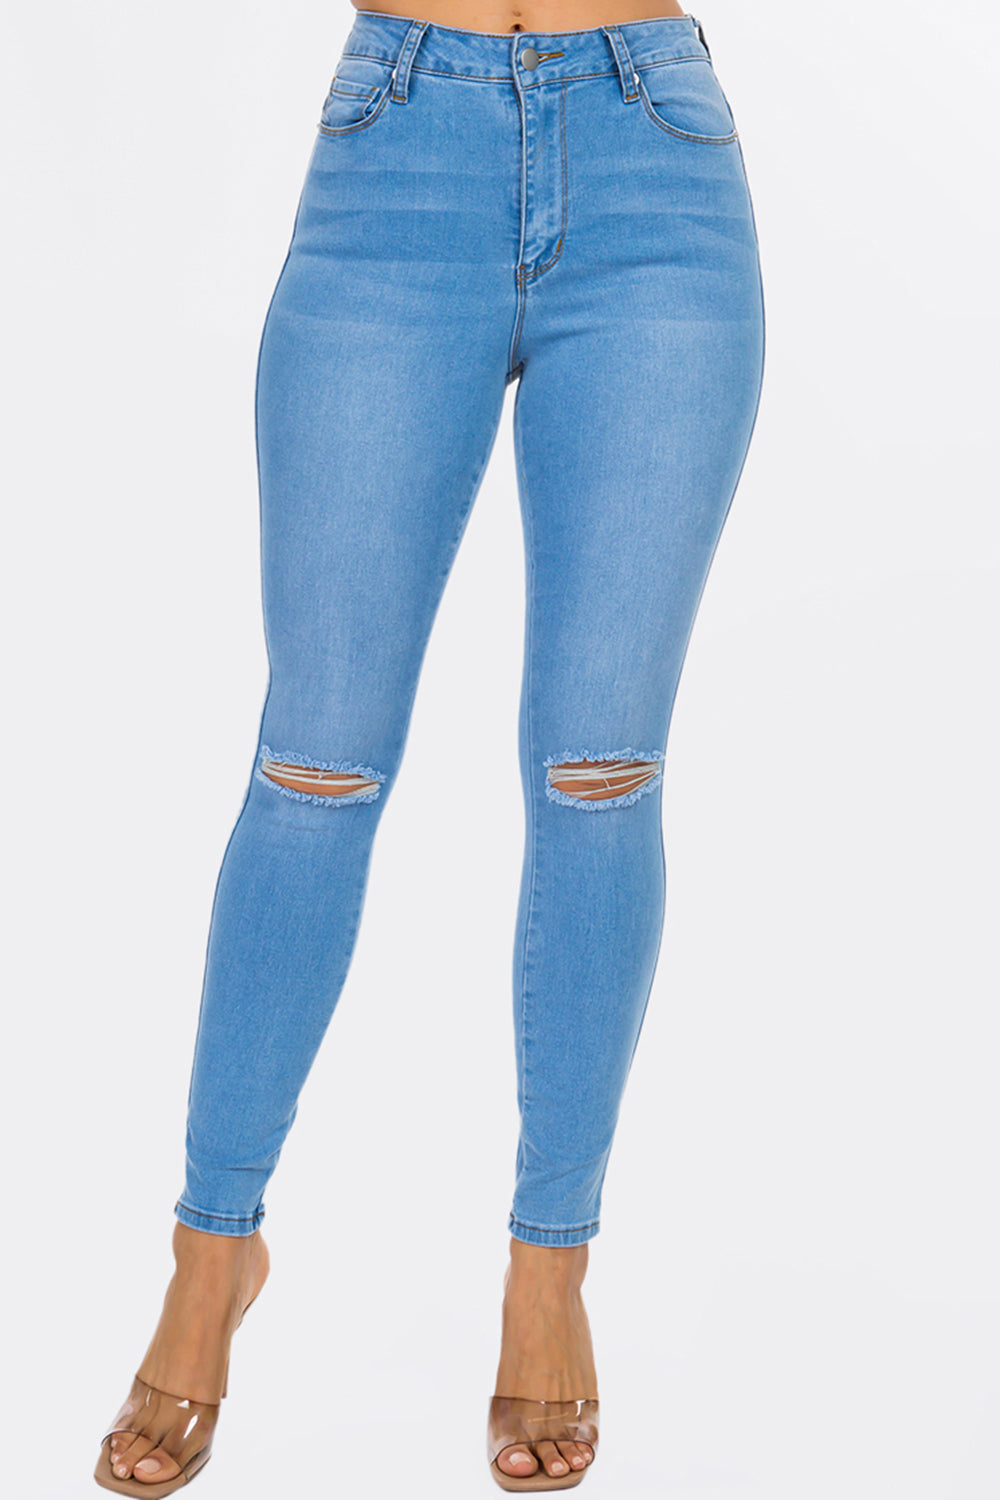 NEW Gianna Slit Knee High Rise Skinny Jeans Dark Blue WH3707